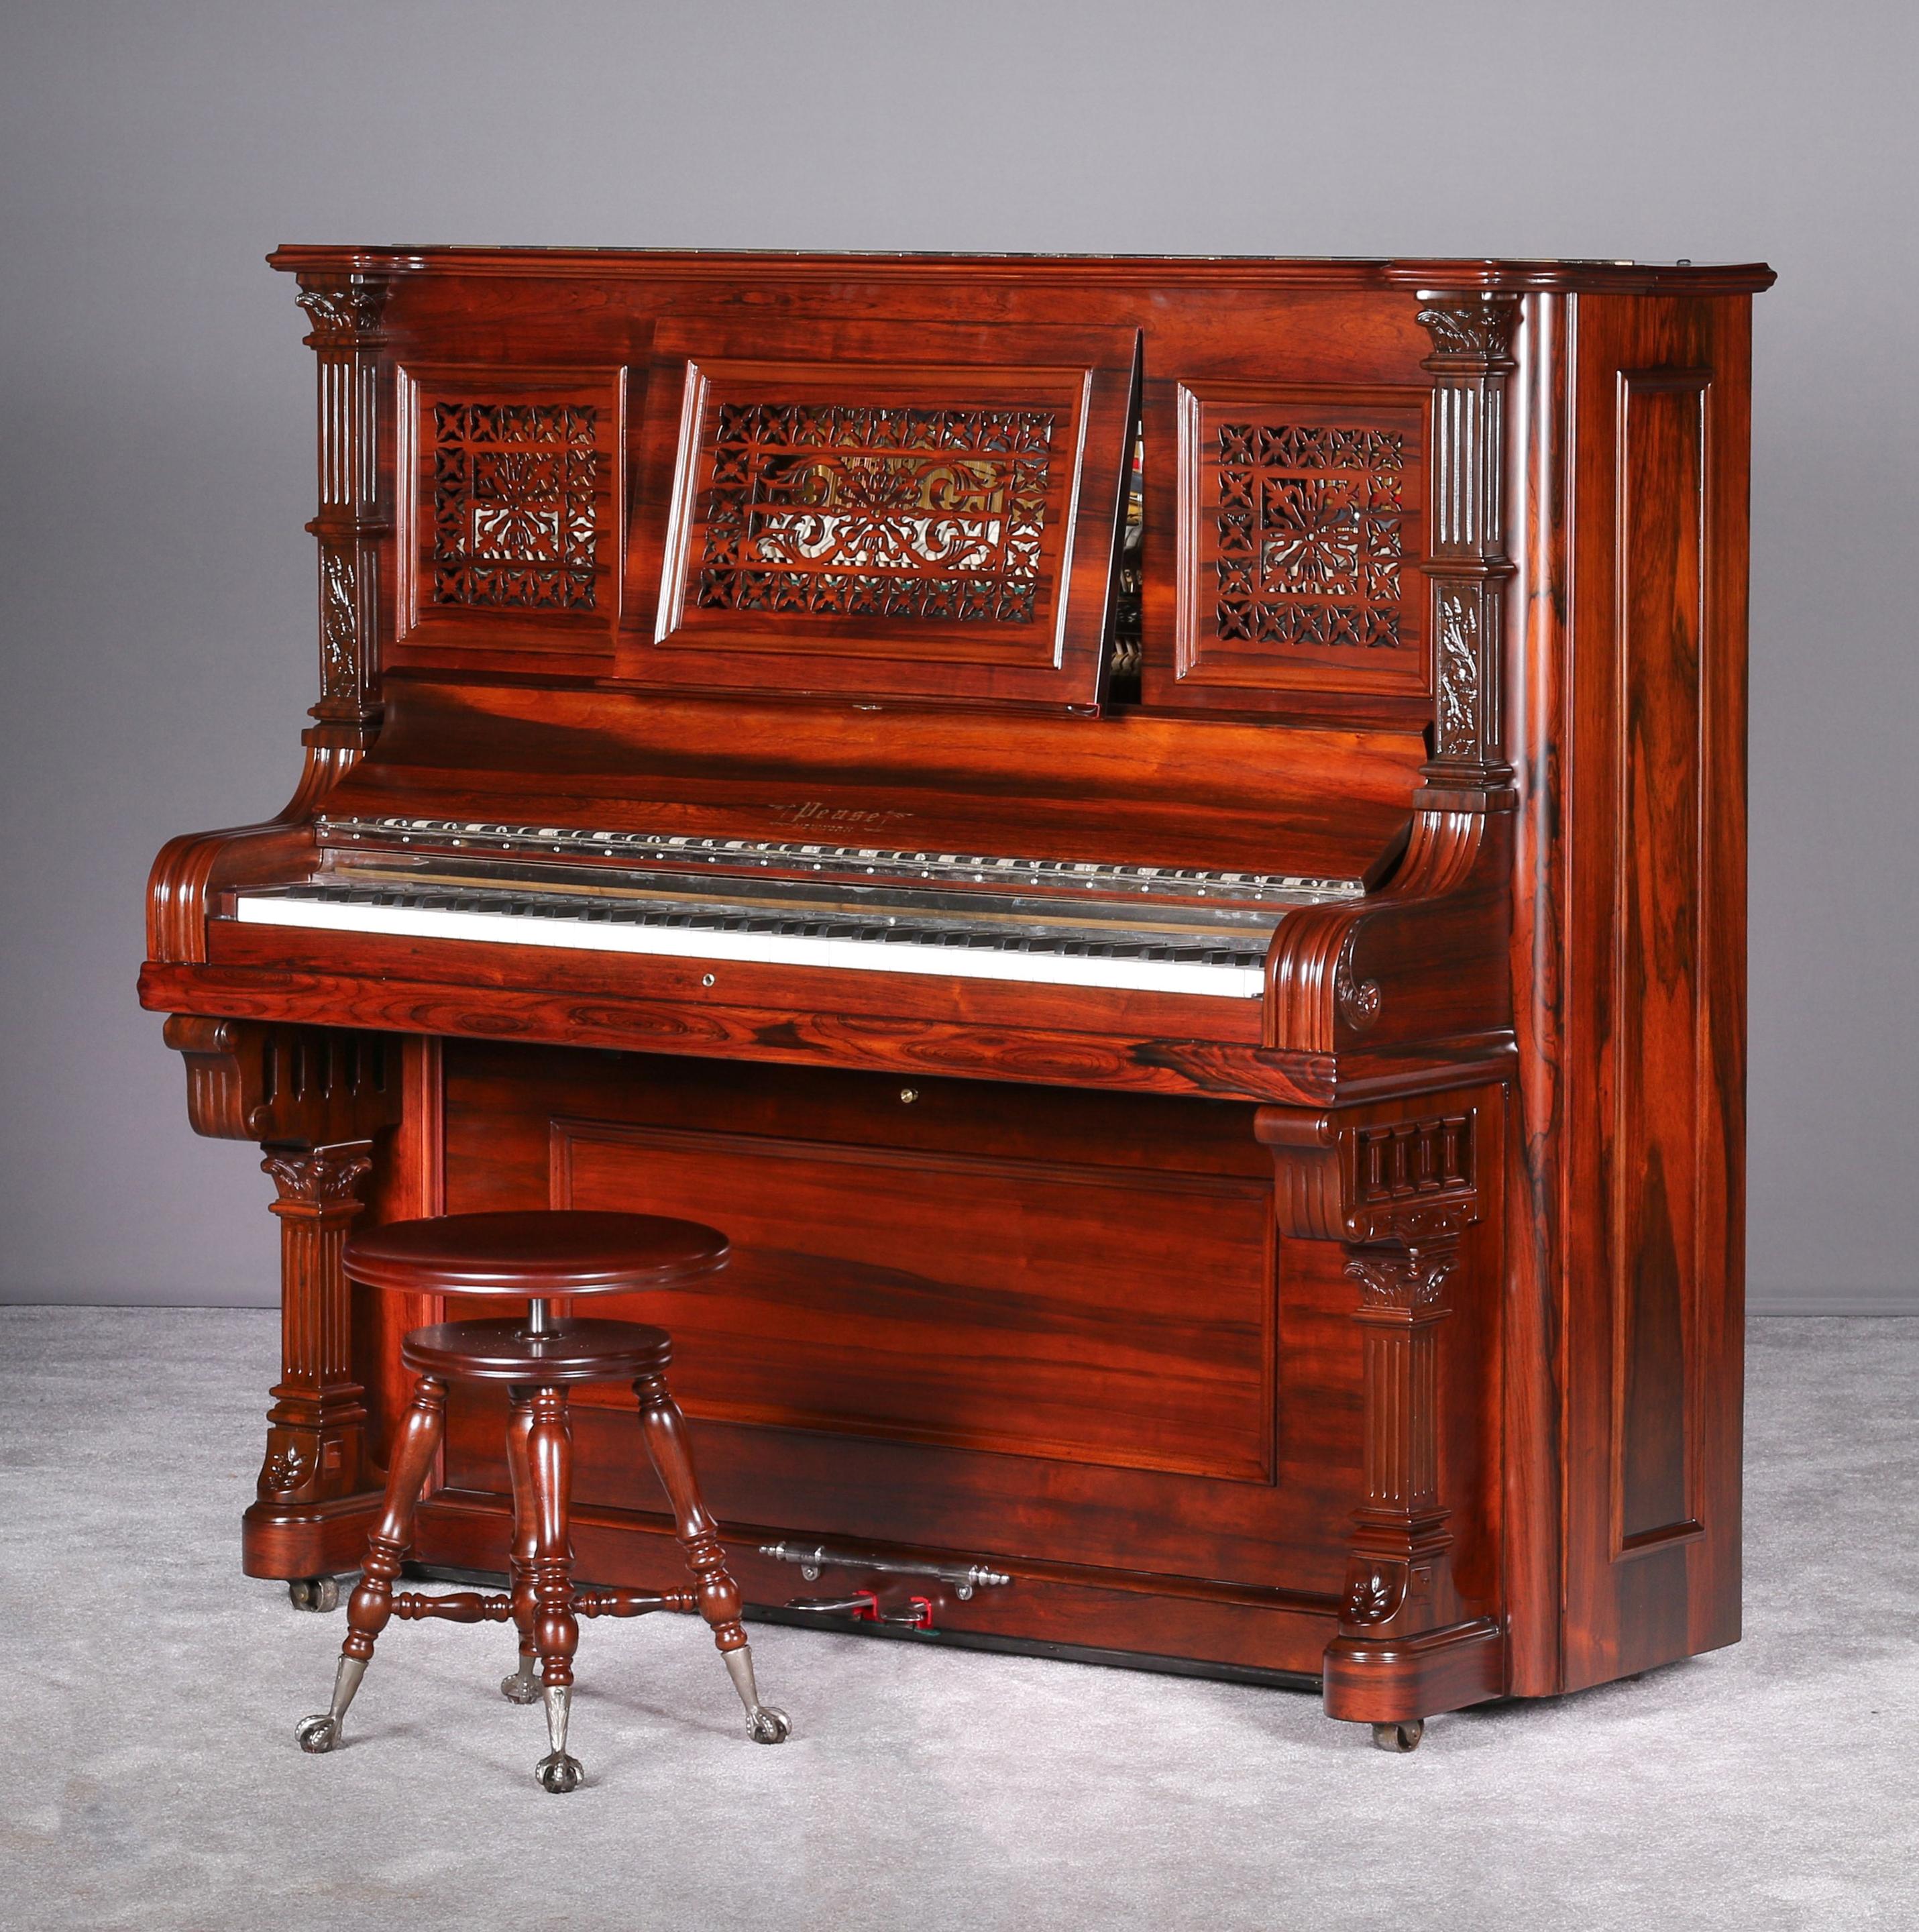 Piano droit Pease de 1891 entièrement restauré